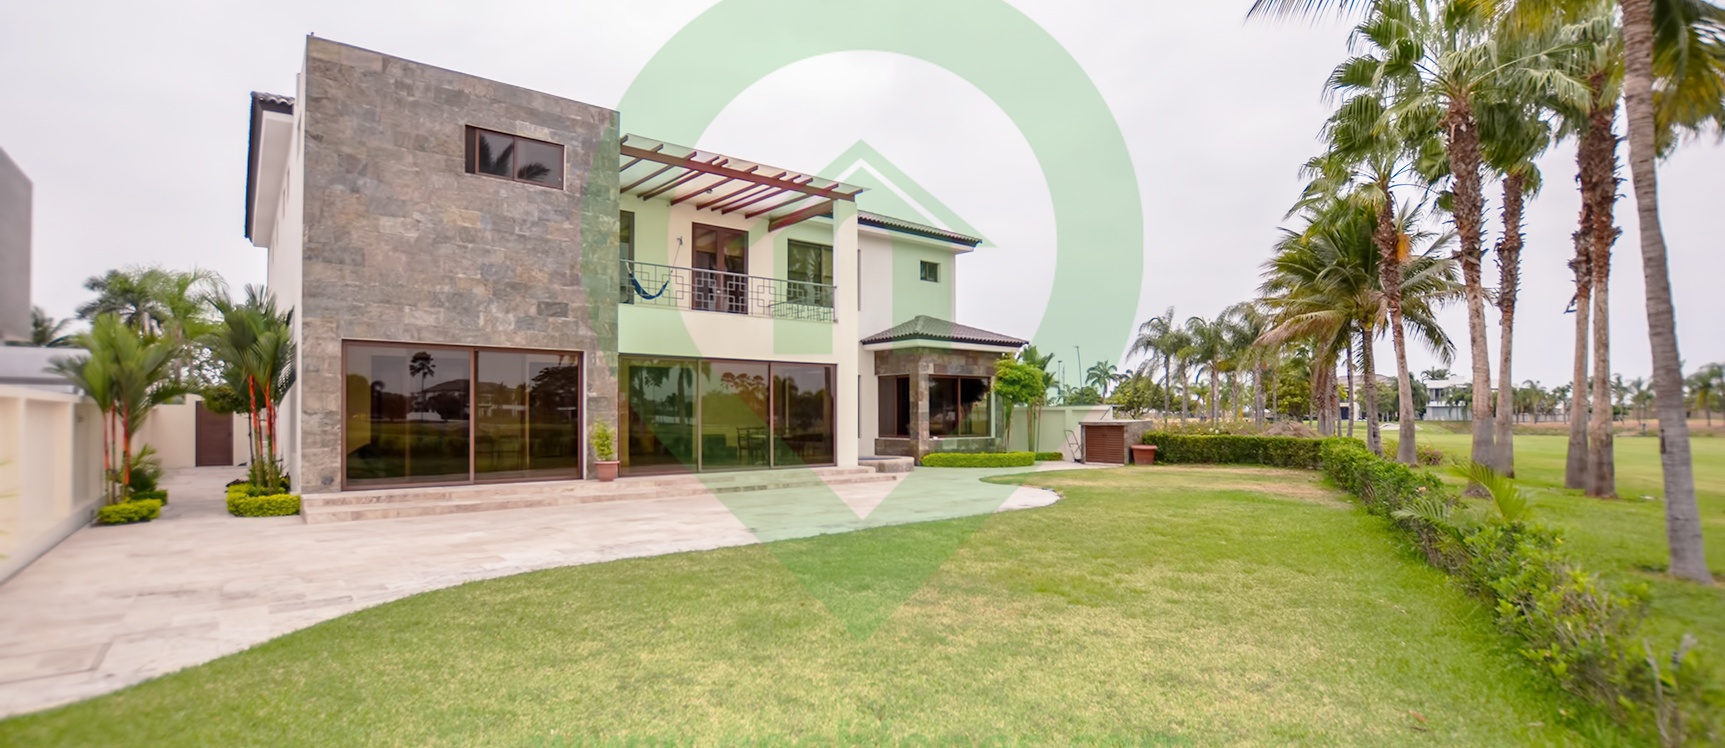 GeoBienes - Casa en venta en Mocolí Golf Club vía a Samborondón - Plusvalia Guayaquil Casas de venta y alquiler Inmobiliaria Ecuador